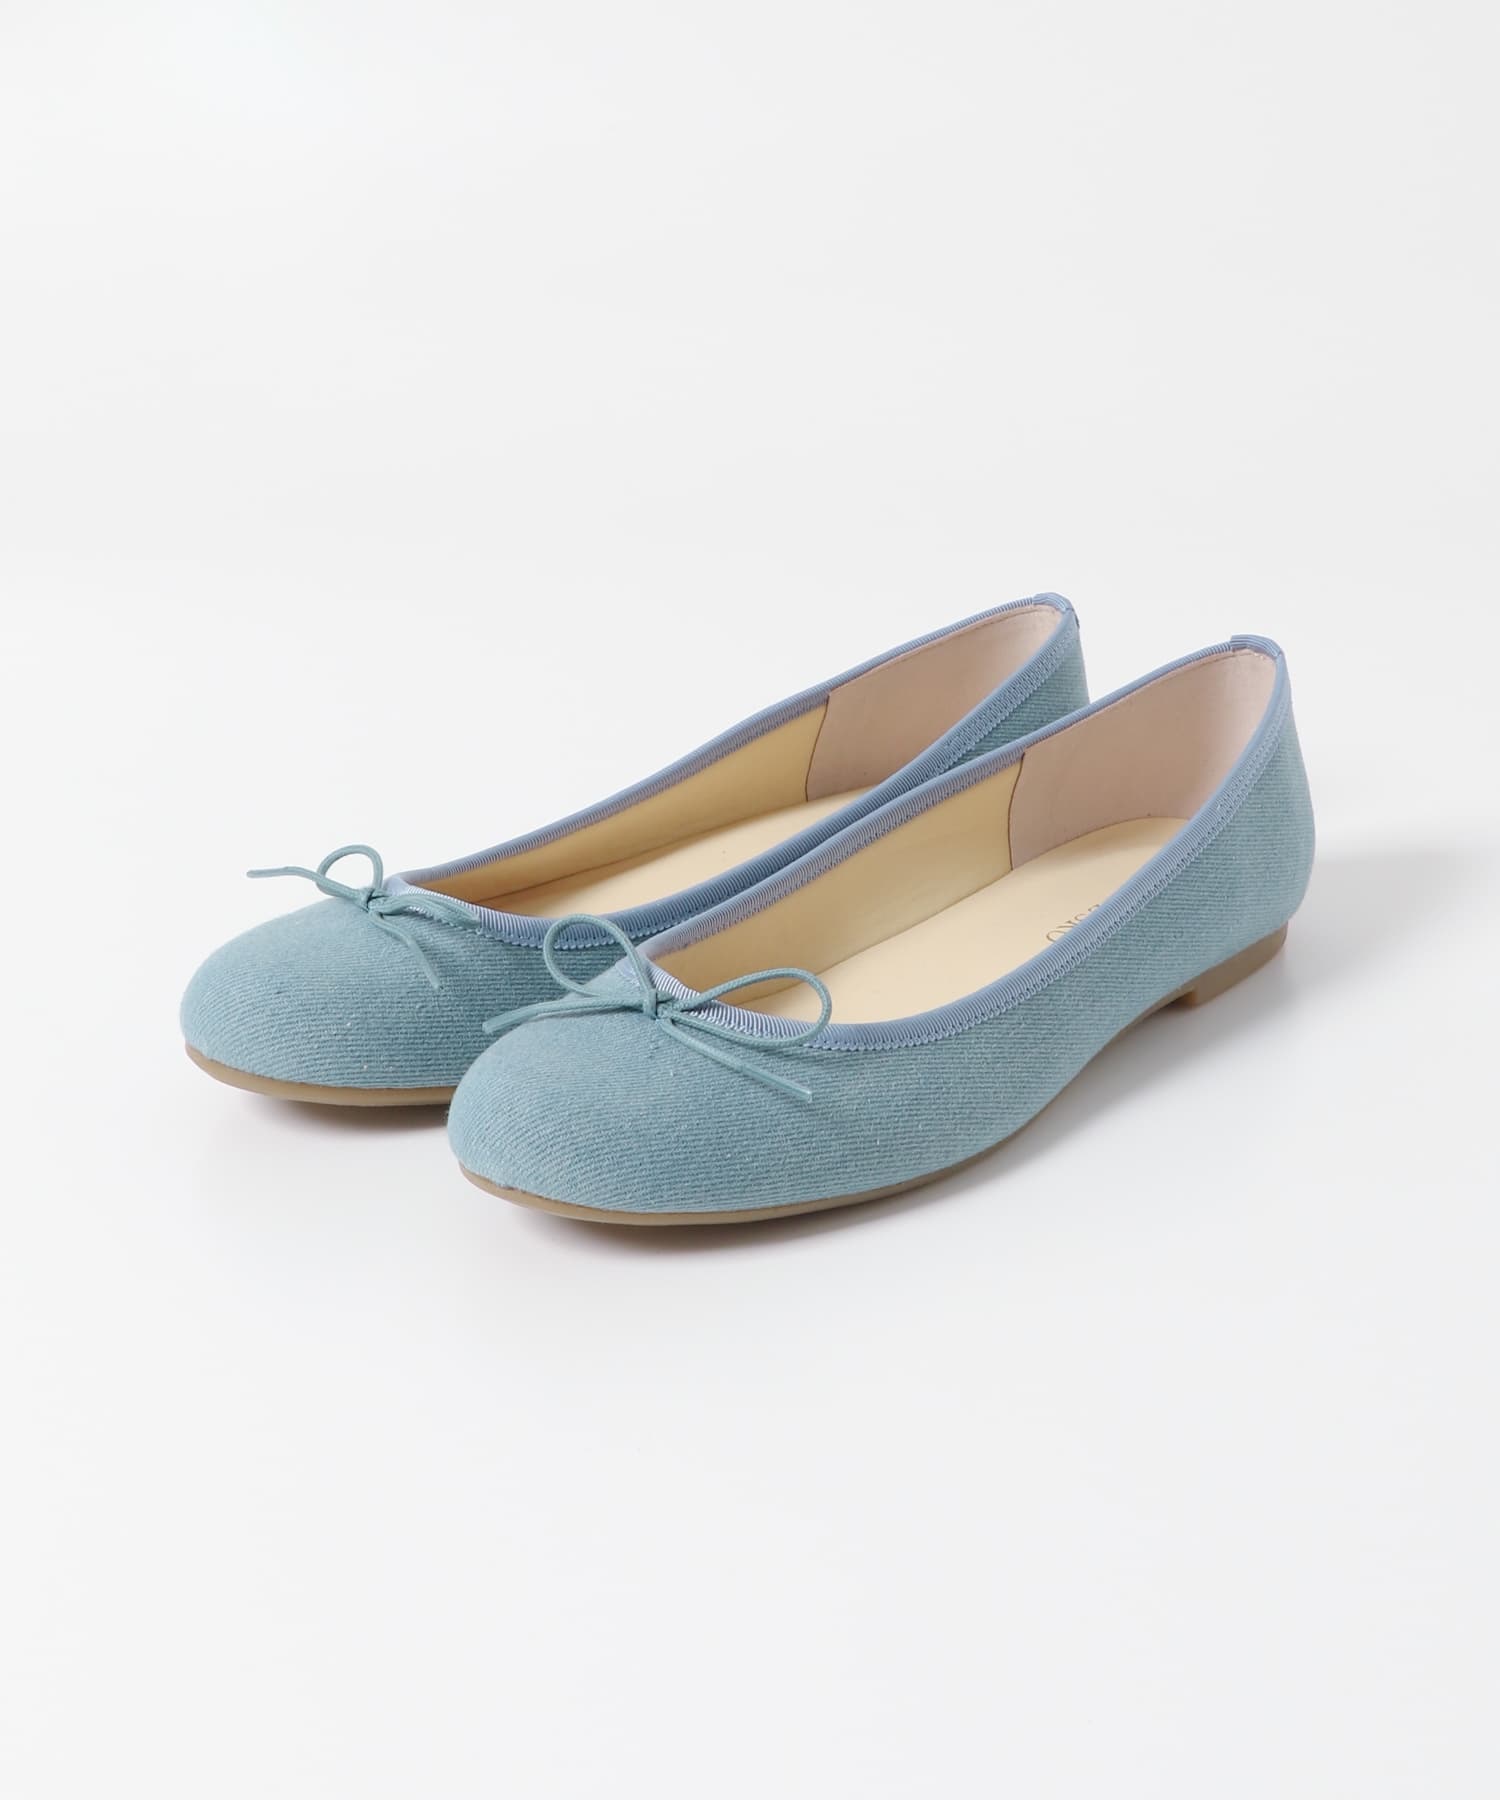 日本製蝴蝶結平底芭蕾軟鞋(牛仔藍-36-LIGHT INDIGO BLUE)